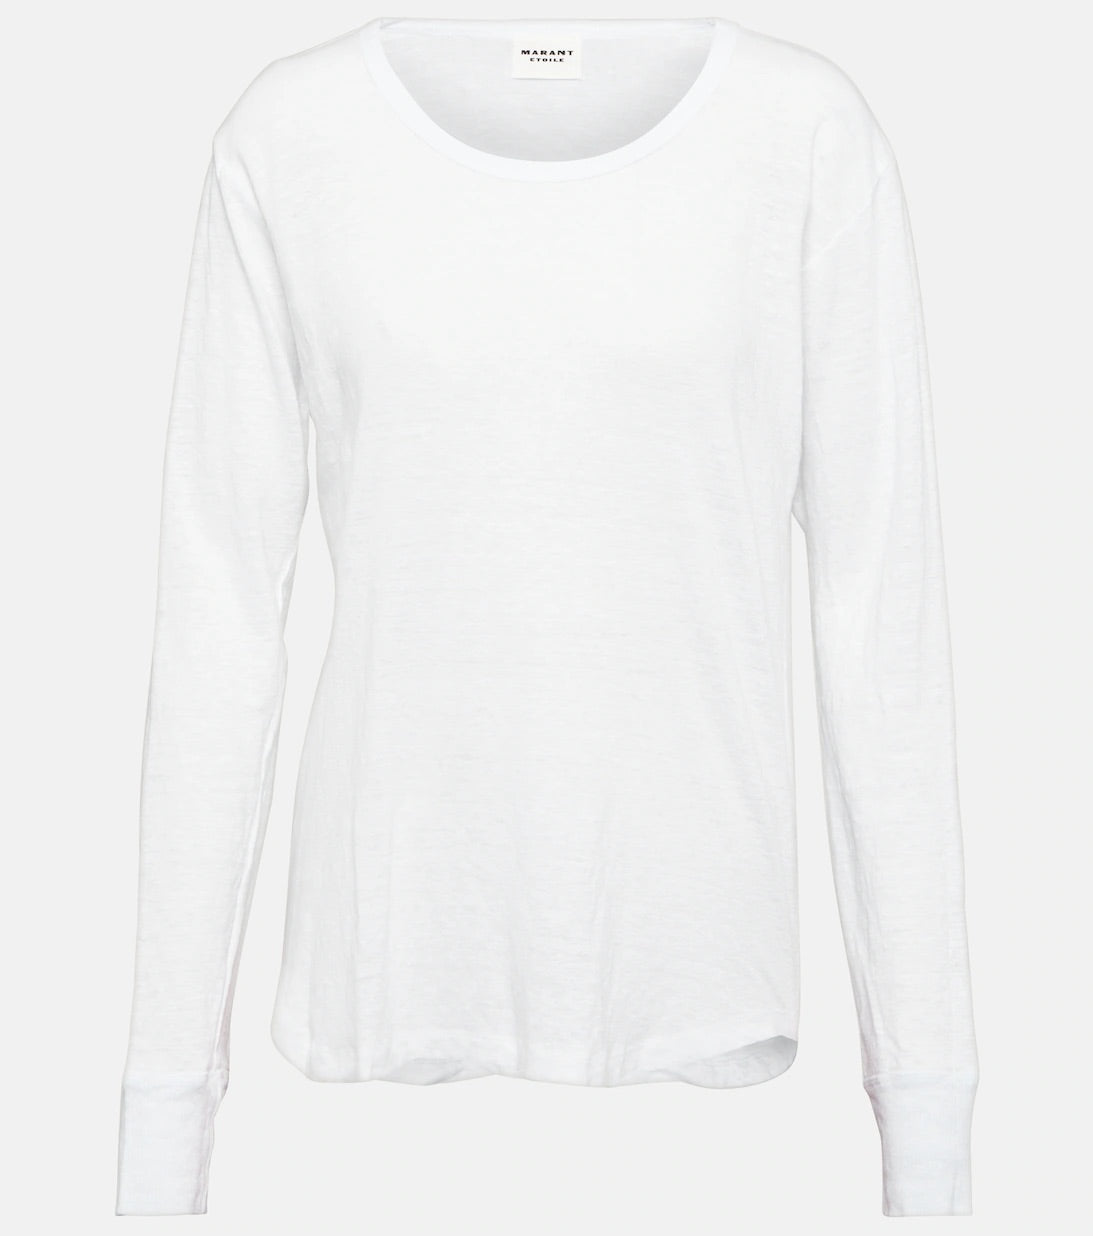 Zeline t-shirt, white